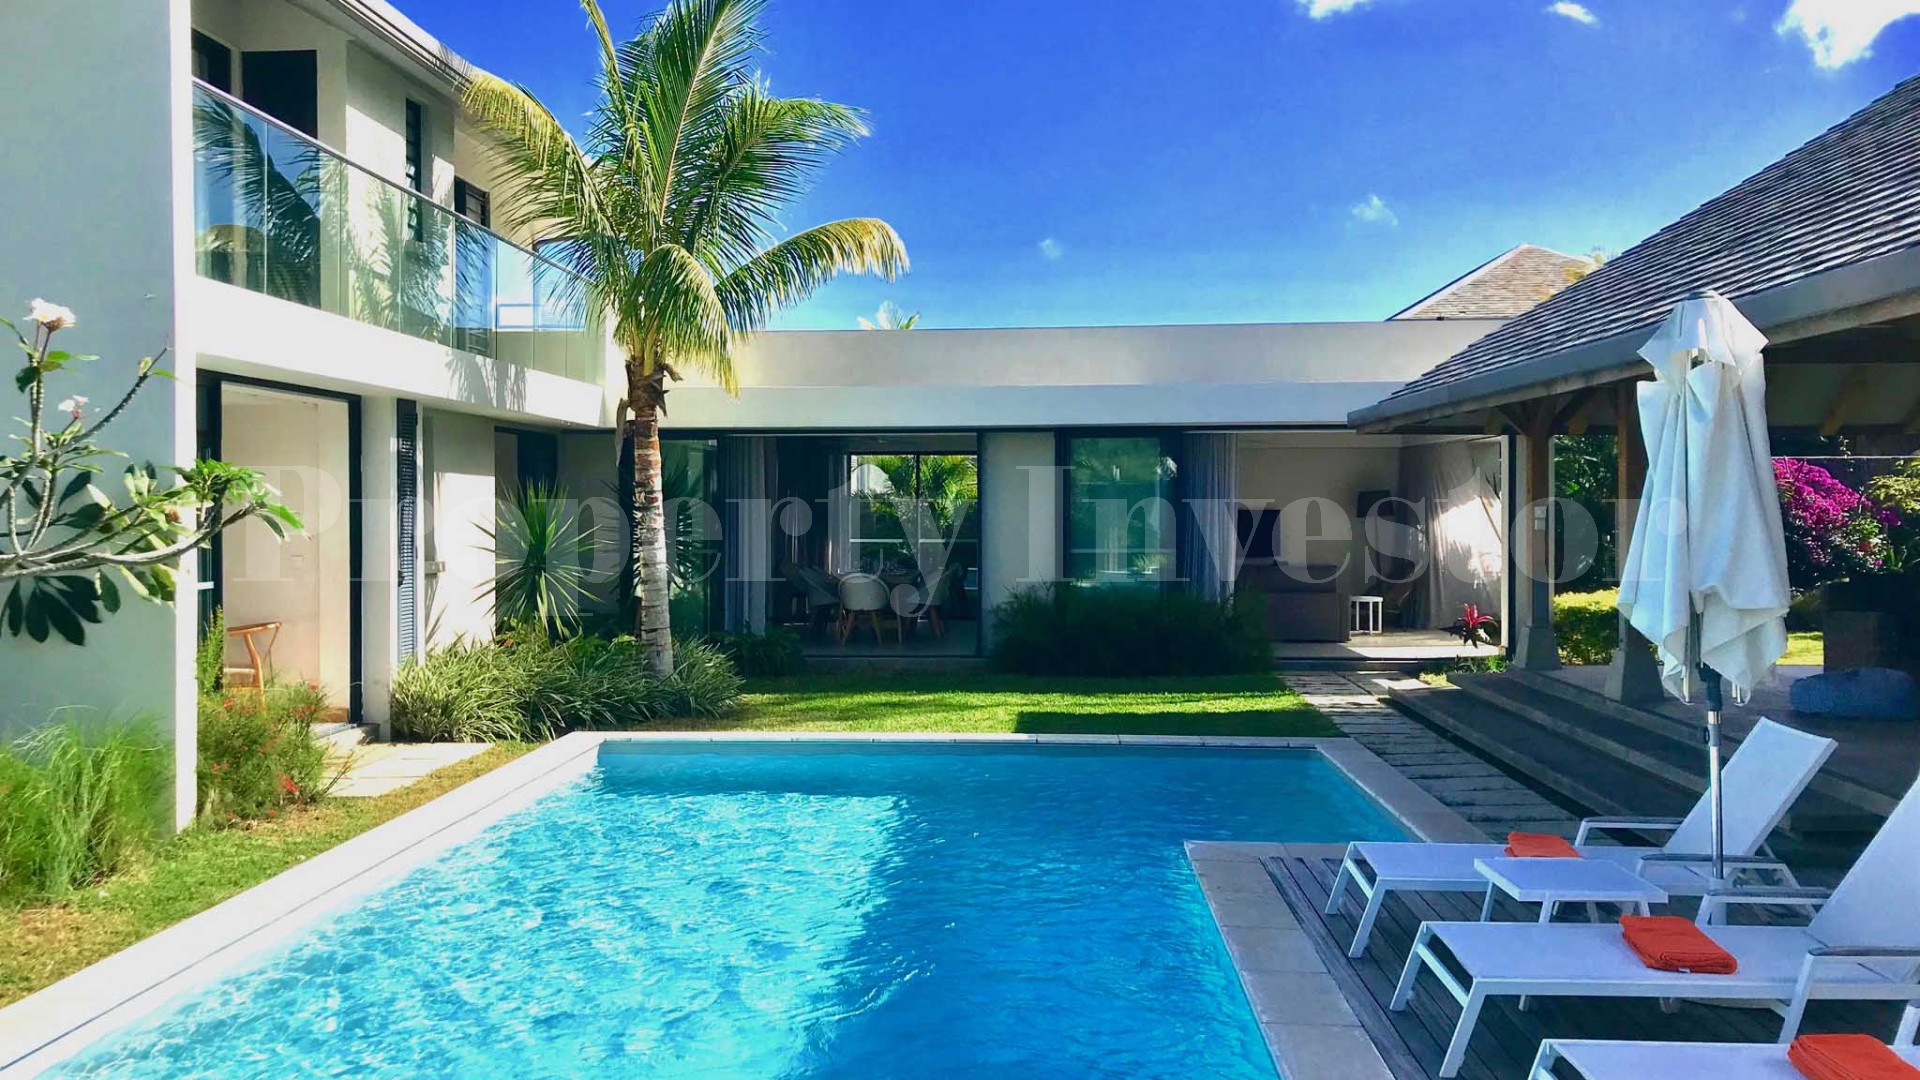 4 Bedroom Villa in Mauritius (Villa 29)